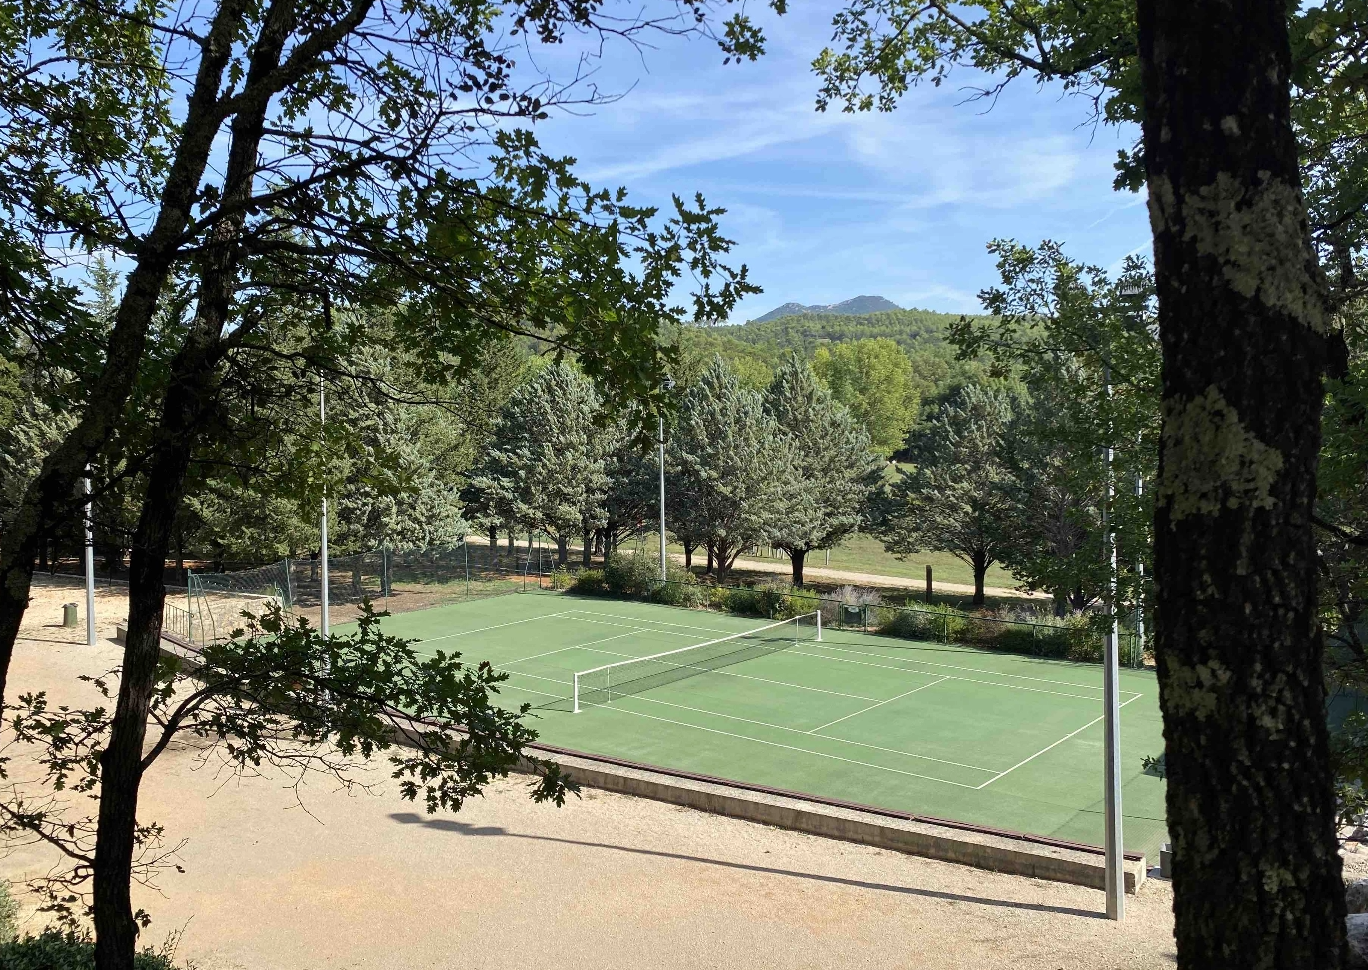 au domaine de la Reparade accéder au tennis municipal de chateauvert